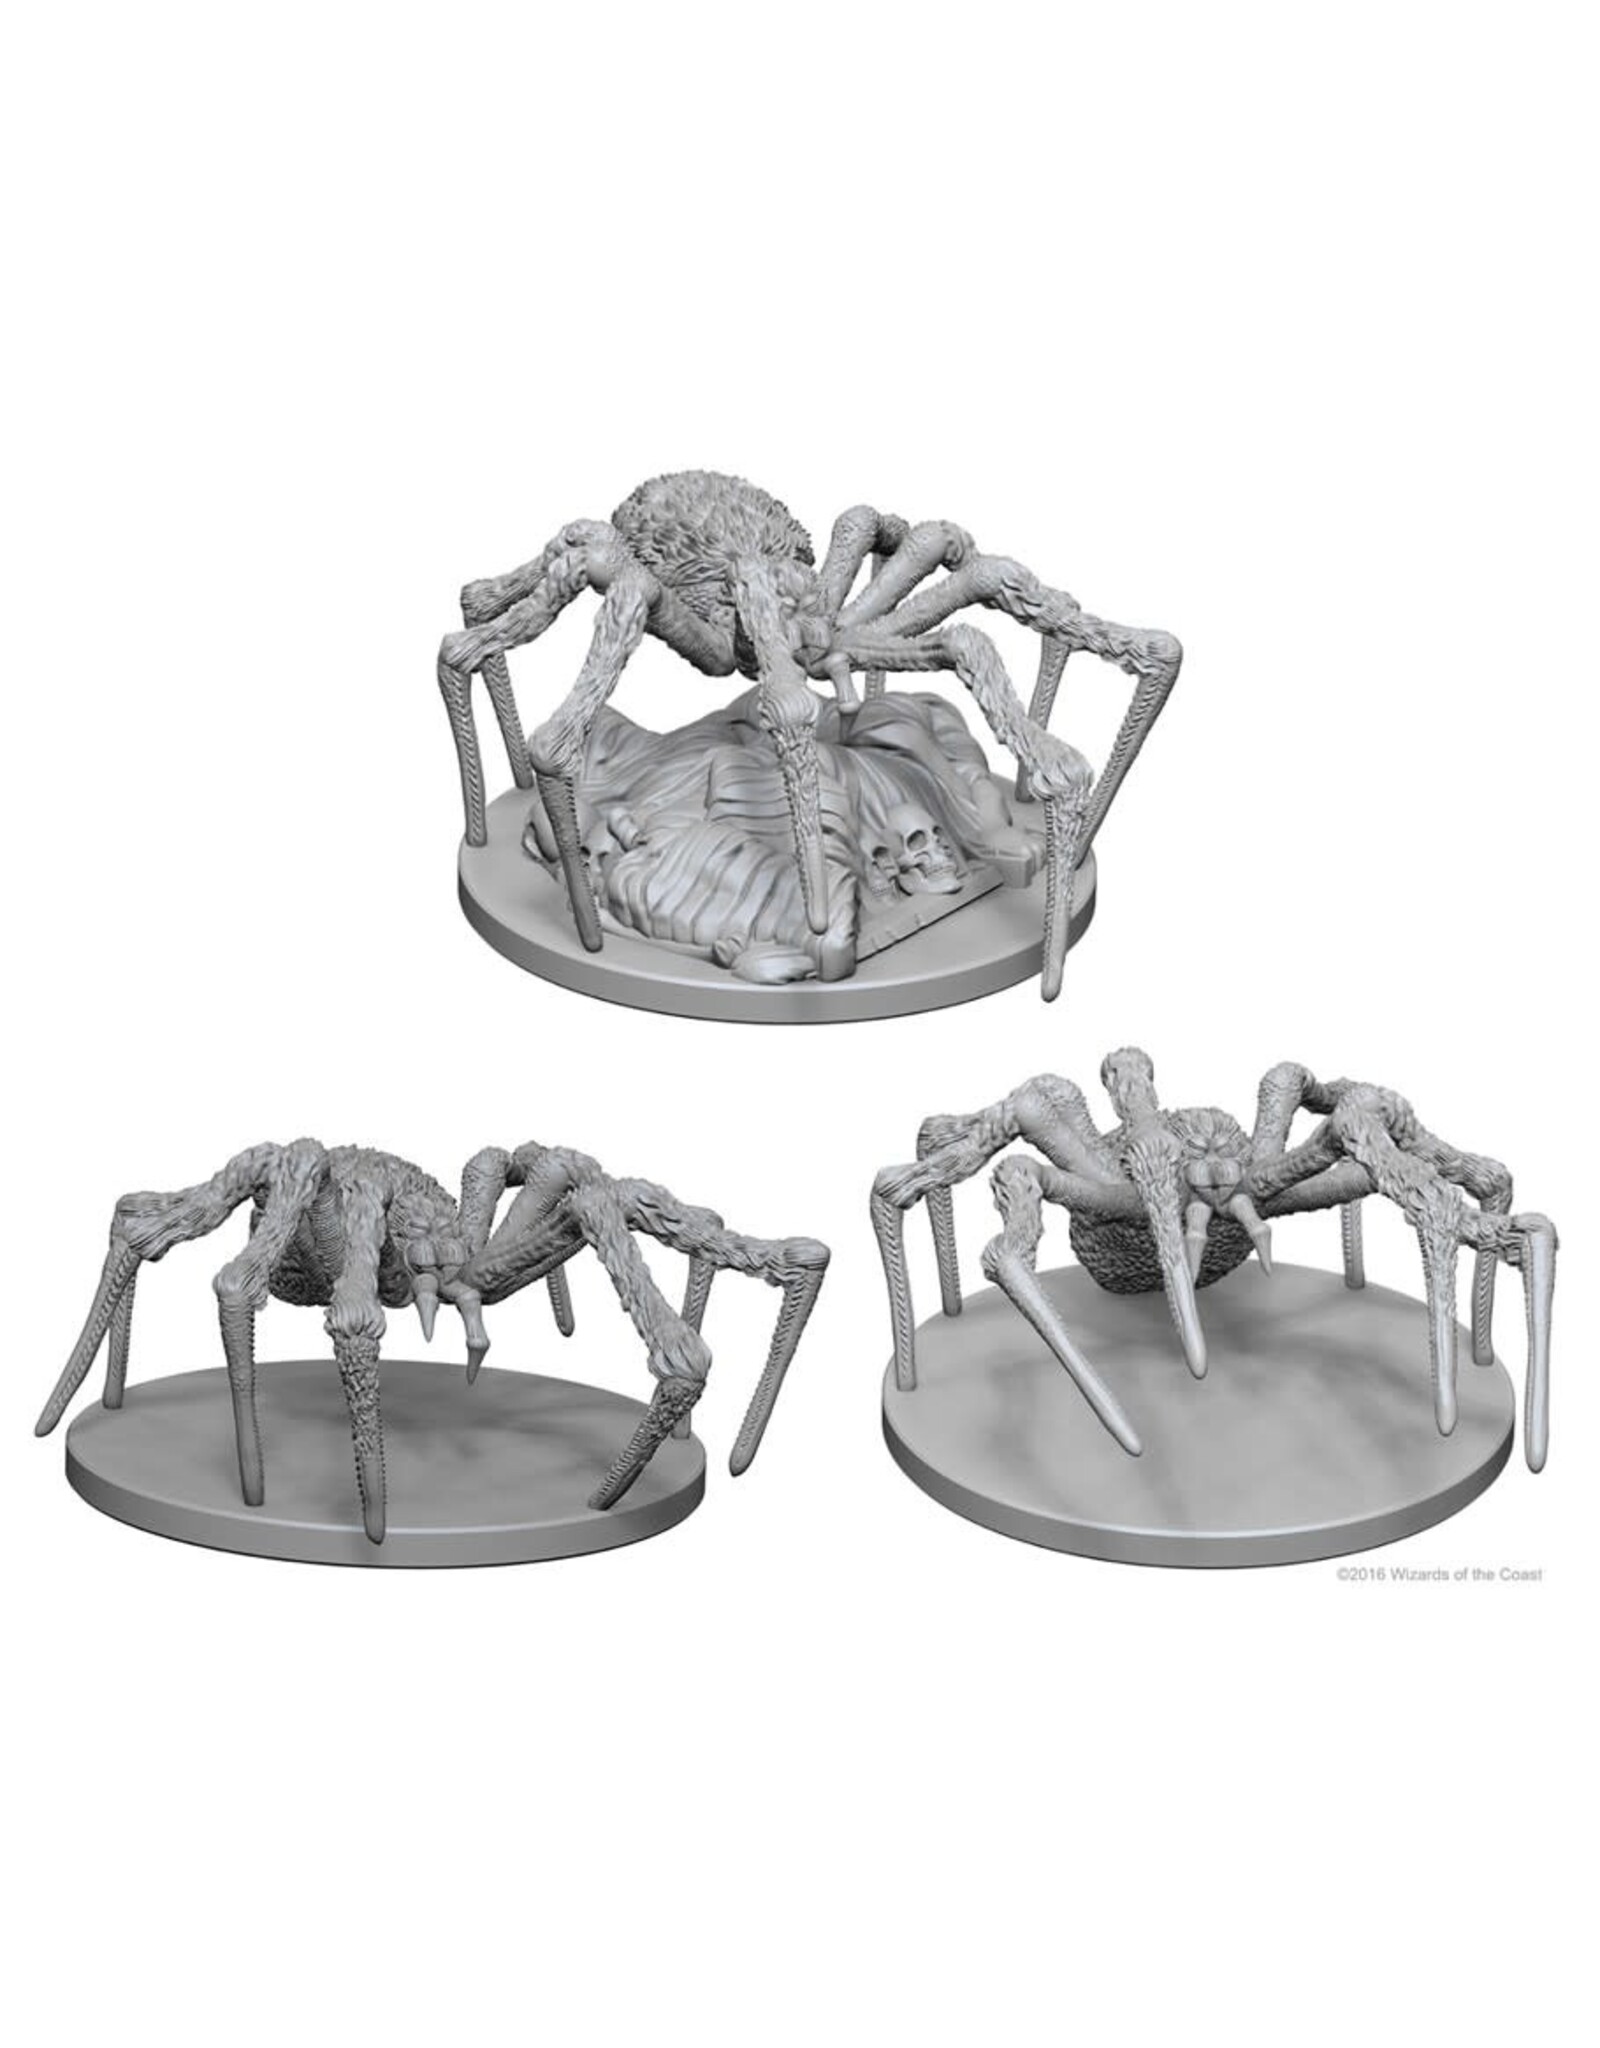 Wiz-Kids D&D Minis: W1 Spiders